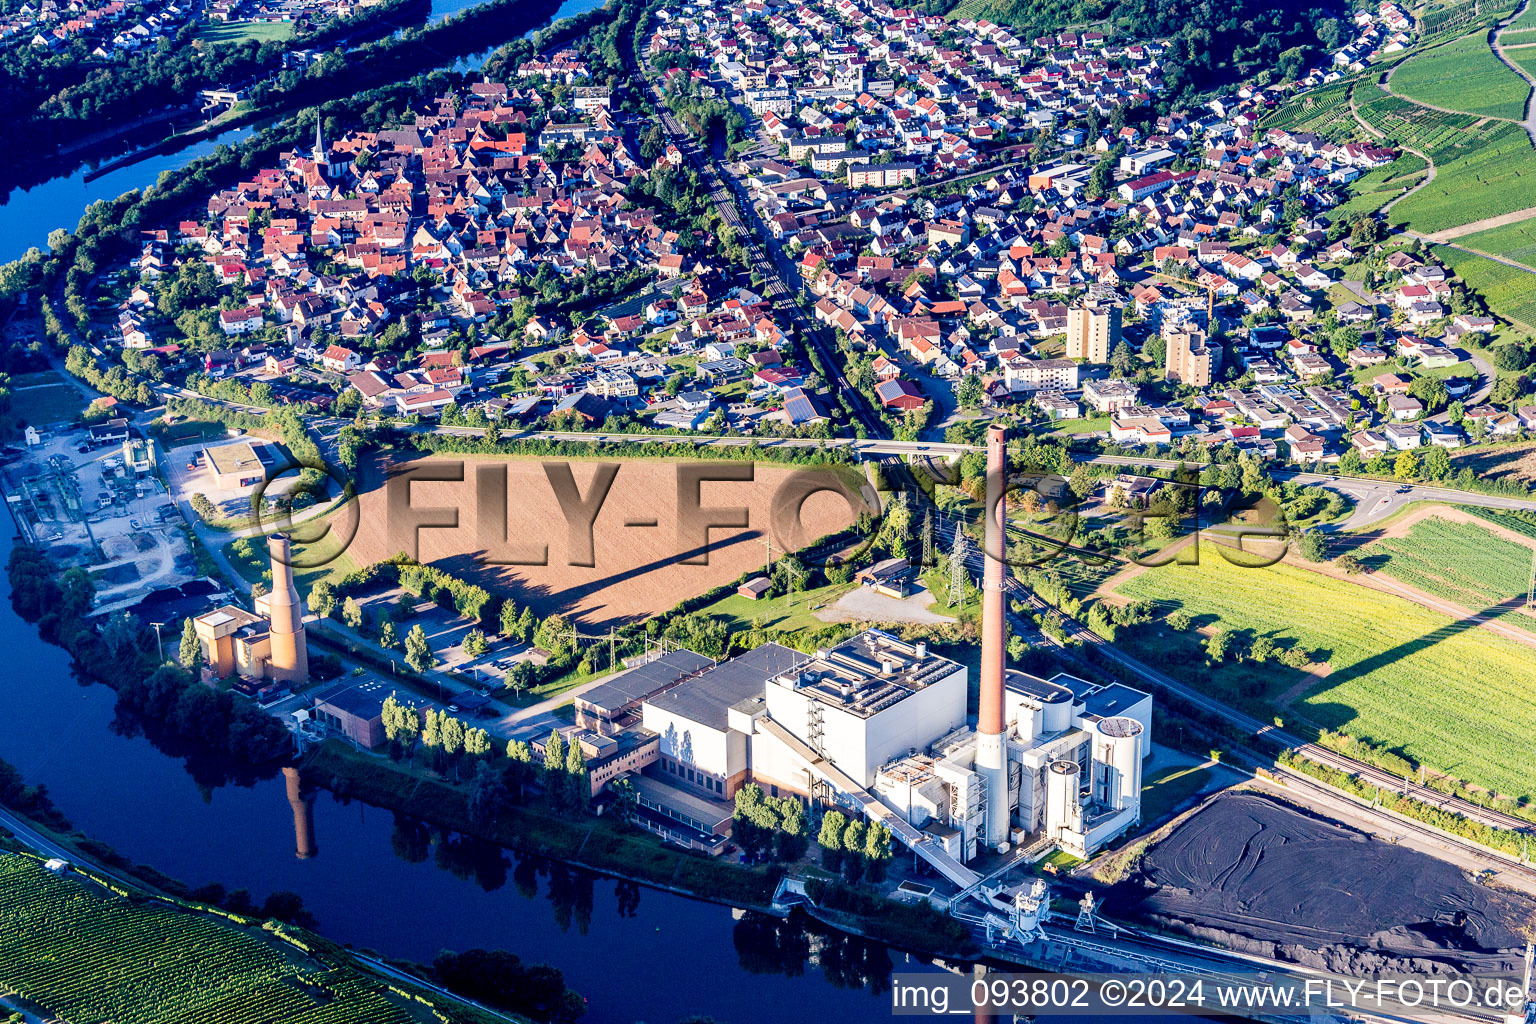 Vue aérienne de Centre villageois et centrale électrique Walheim (EnBW) au bord du Neckar à Walheim dans le département Bade-Wurtemberg, Allemagne